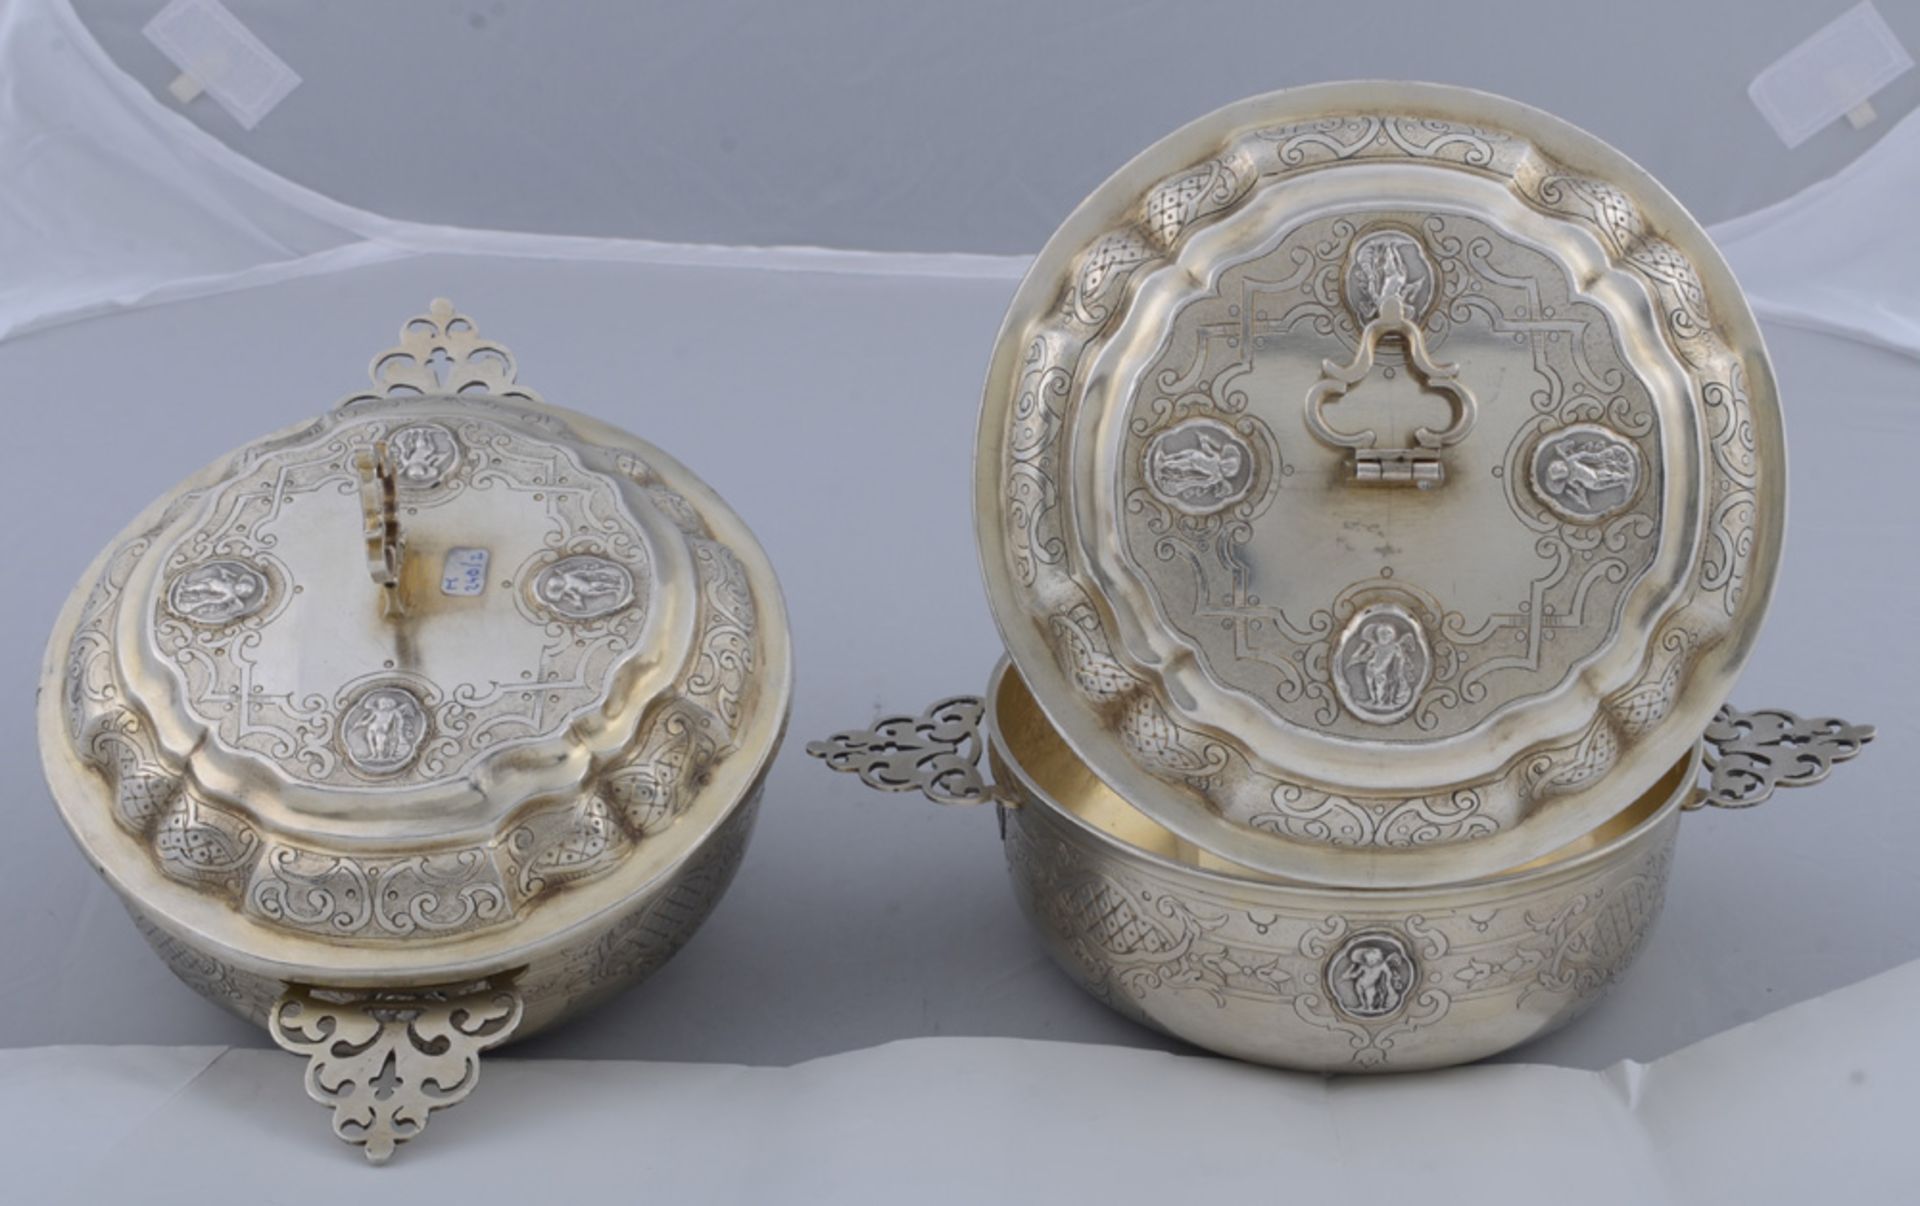 Zwei Deckelterrinen. Augsburg. Silber, ca. 770 g, mit durchbrochenen Henkeln, ziseliert; am Boden mi